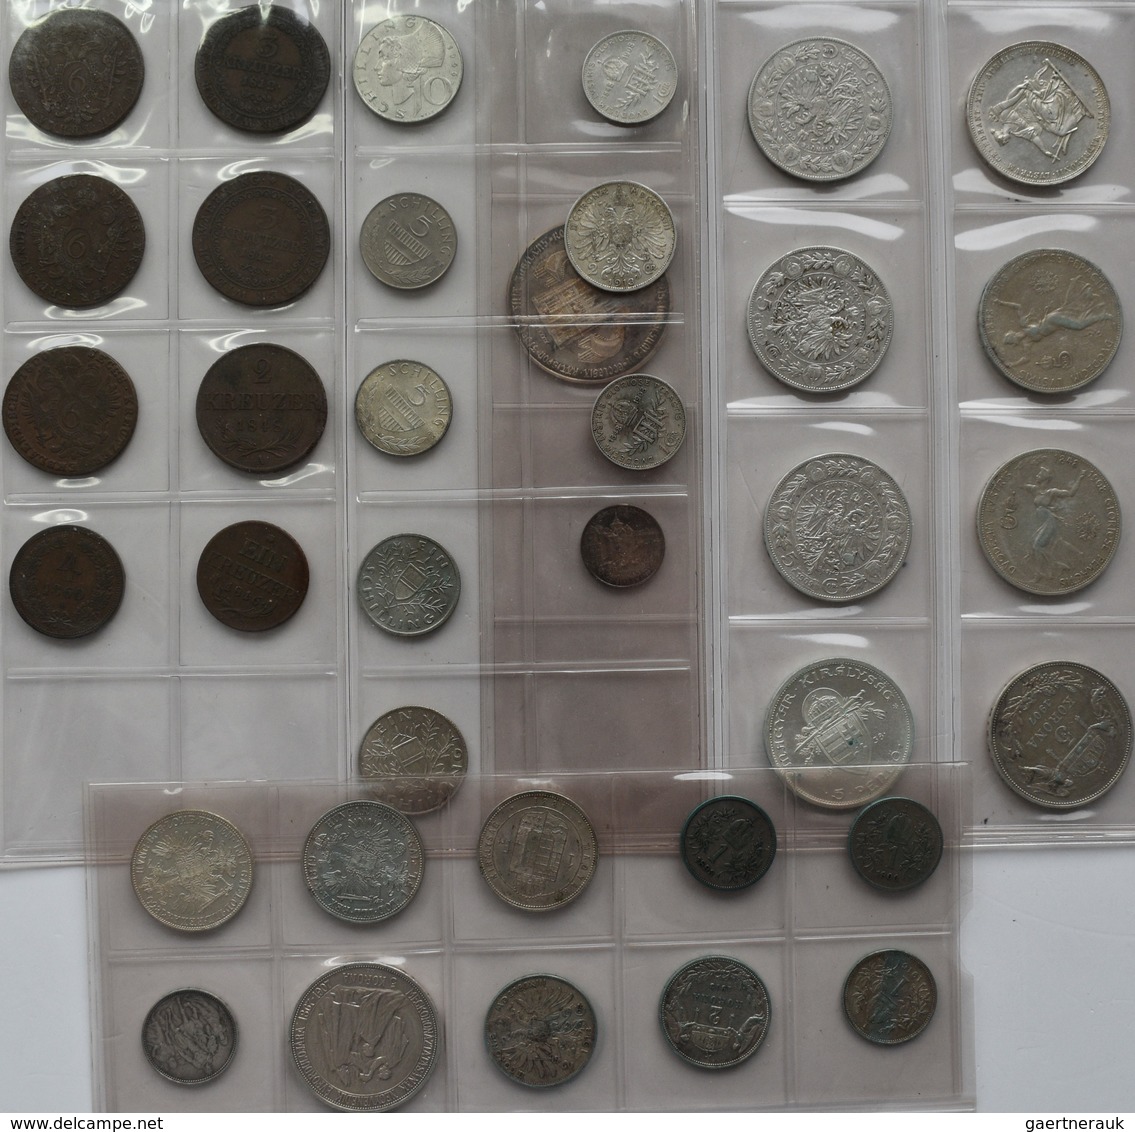 Haus Habsburg: Kleines Lot An Münzen Aus Österreich-Ungarn, überwiegend Silbermünzen Um 1900 Wie Flo - Sonstige – Europa